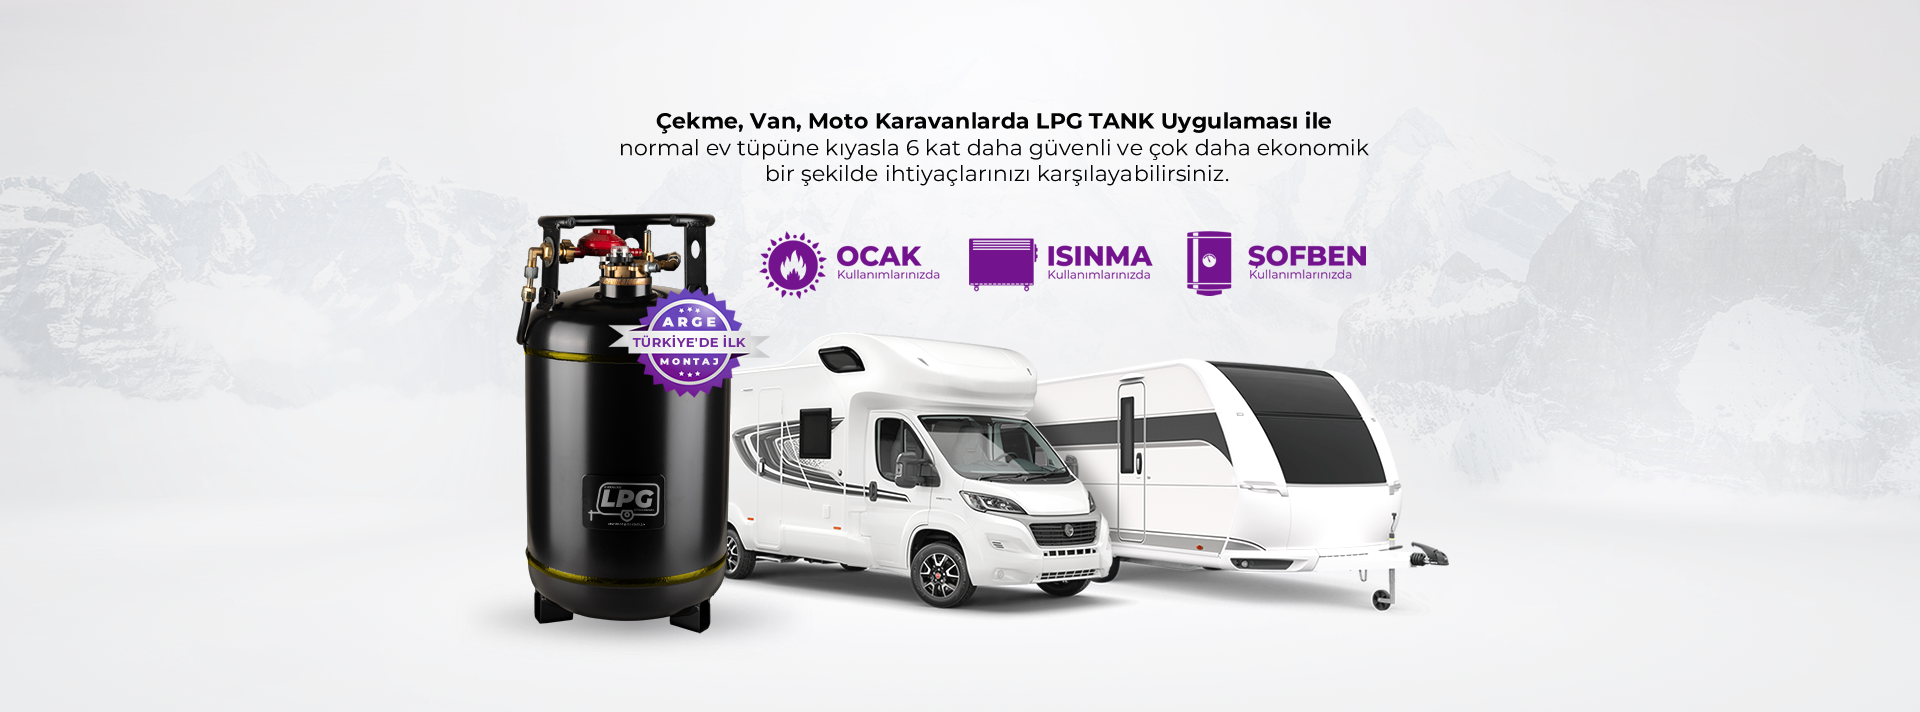 Karavan LPG Tank Uygulaması, Montaj fiyat ve ücretleri - İSTANBUL